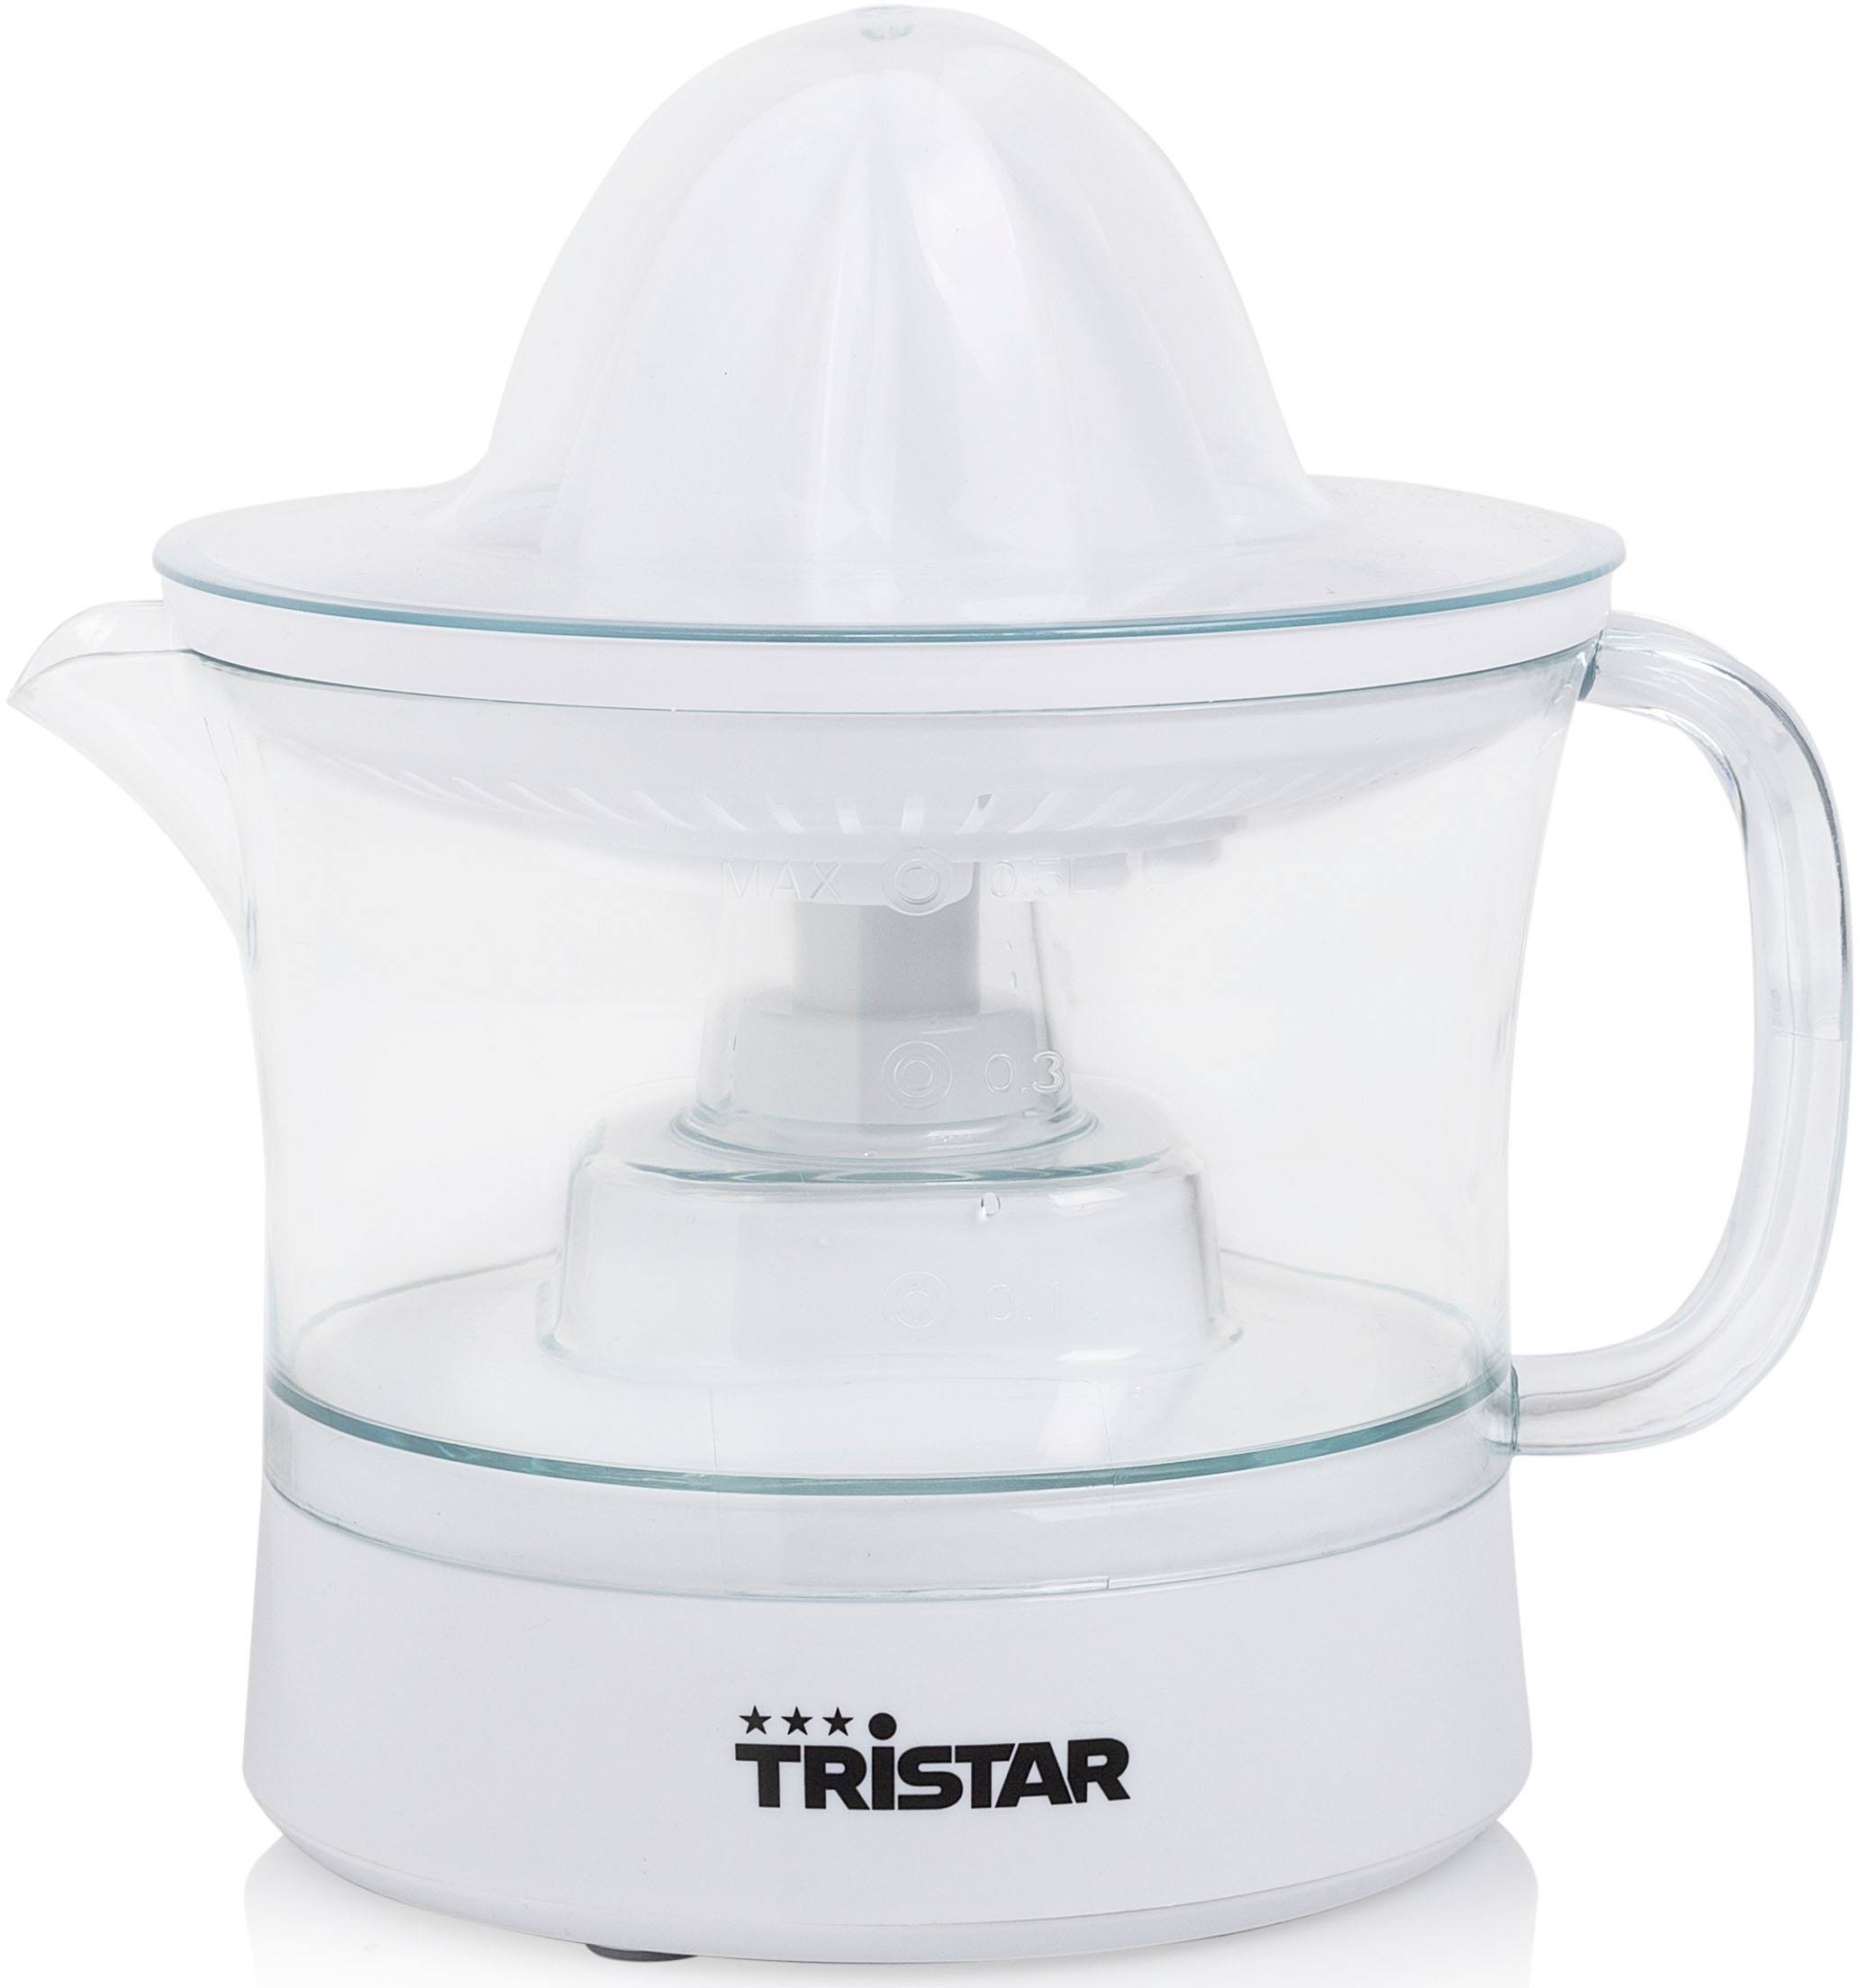 Tristar Zitruspresse "CP-3005", 25 W, 0,5 Liter Inhalt, 2 Presskegel-Größen für jede Citrusfrucht, 25 Watt